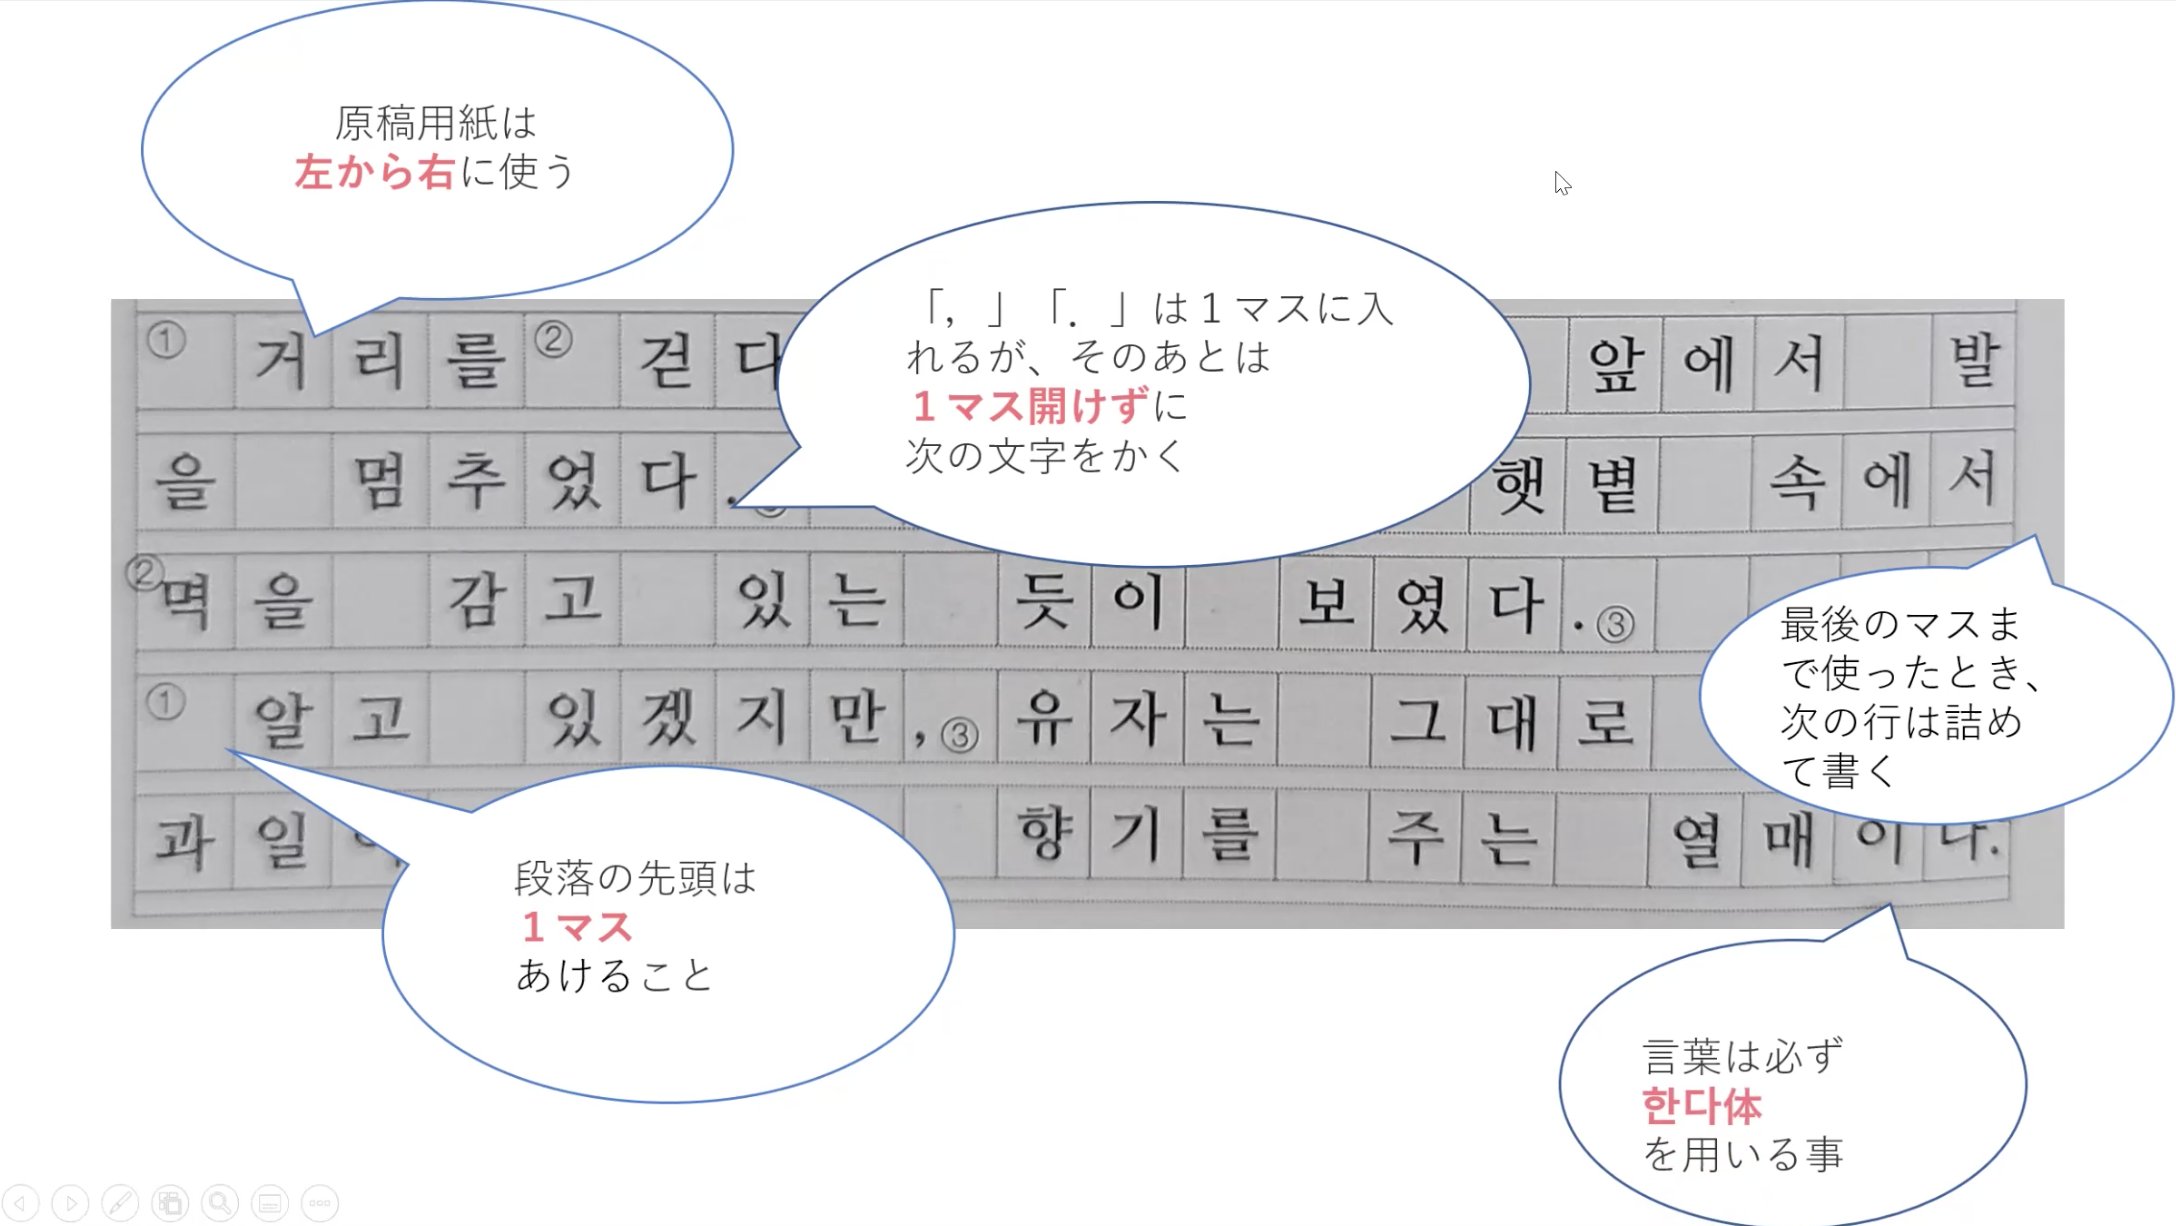 Kachi 韓ドラで学ぶ韓国語 Topik作文のポイントまとめ 54番の作文ってどうやって書き始めたらいいかわからない 原稿用紙の記載ルールを知らない そんな方のために絶対に抑えておくべきポイントをシェアします これだけでも目を通しておけば作文の